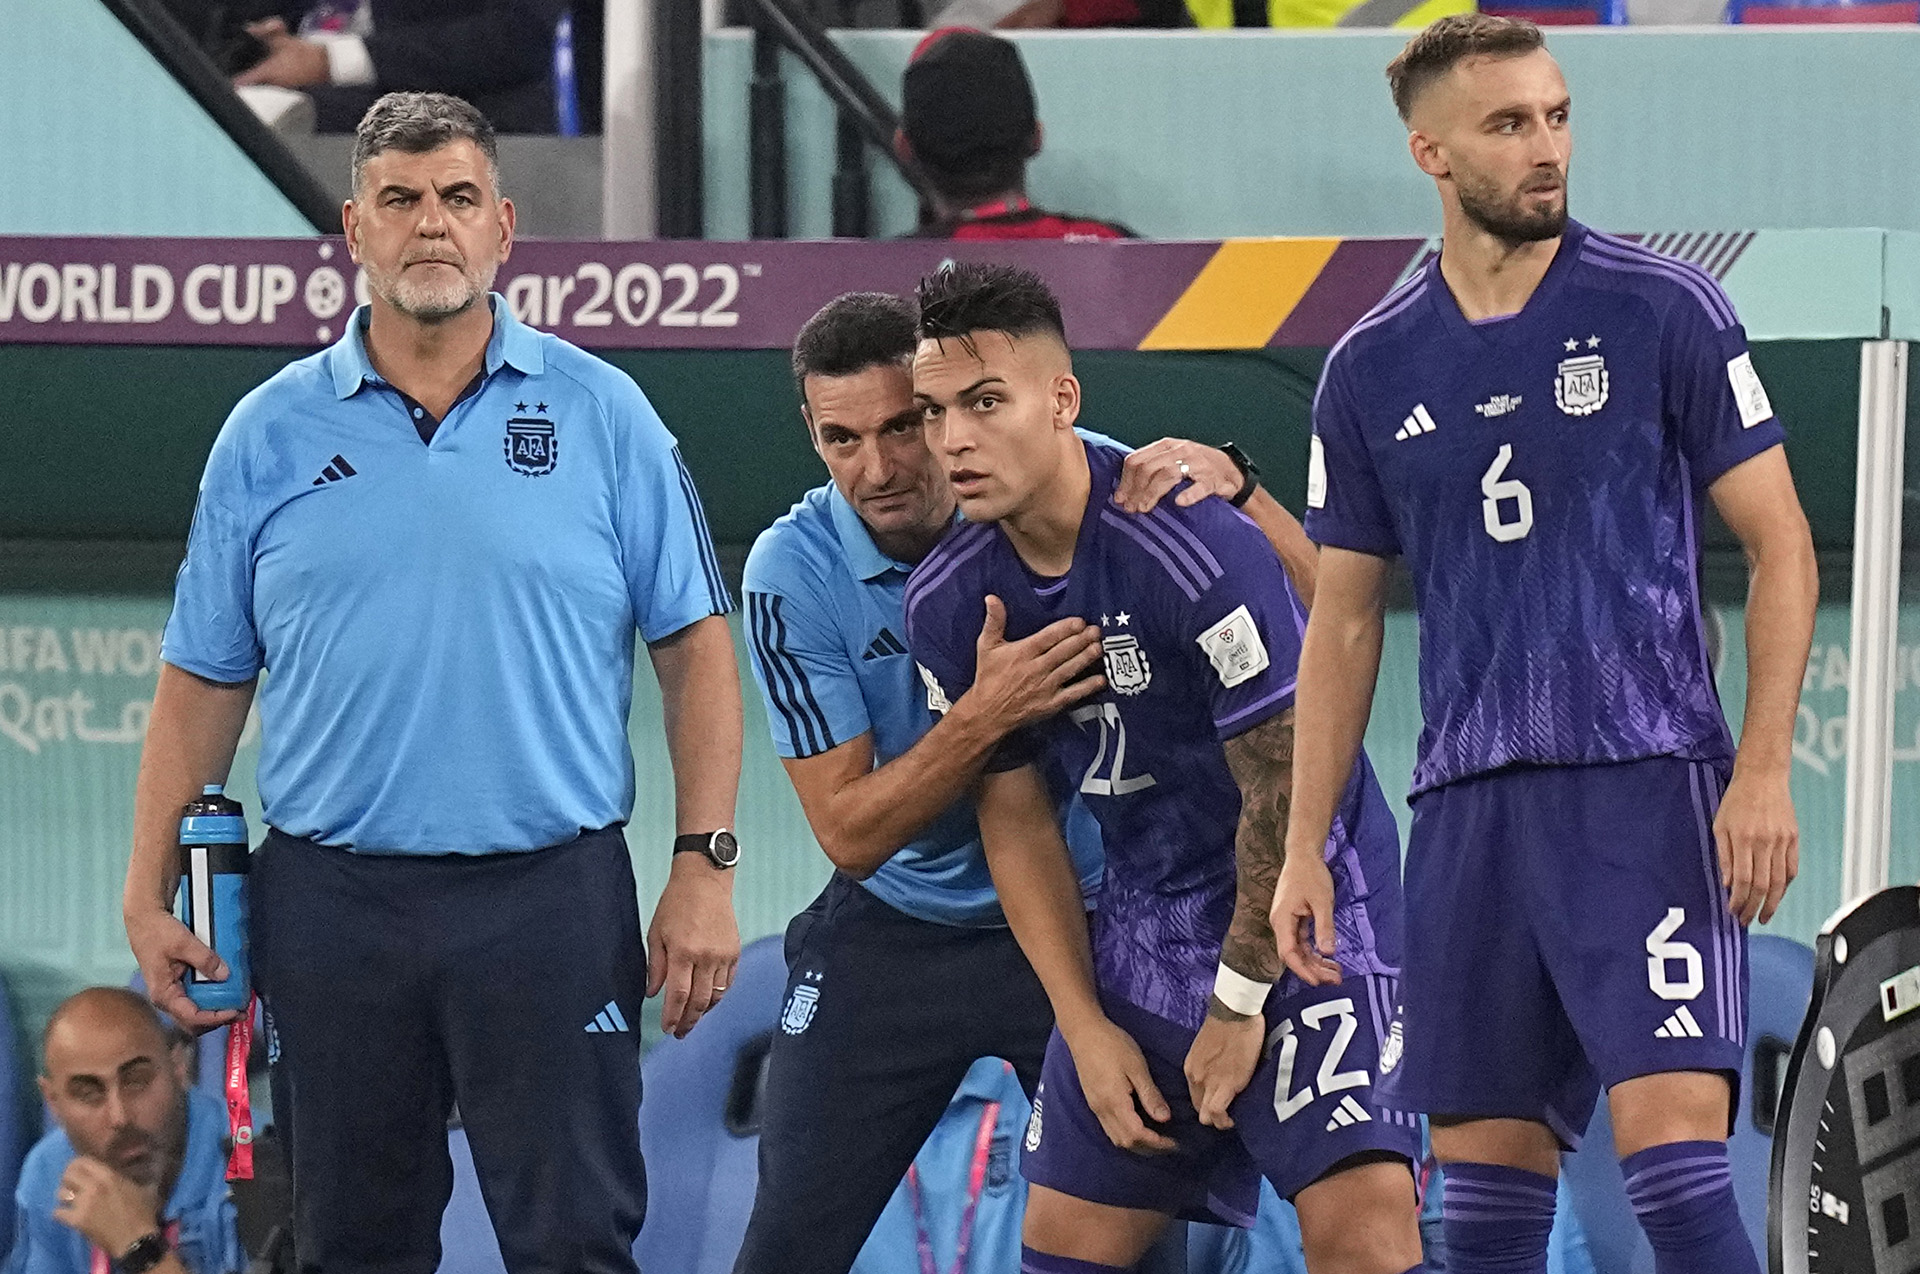 Lionel Scaloni le da indicaciones a Lautaro Martínez durante el Mundial de Qatar 2022. El técnico lo definió como su delantero favorito (AP Photo/Ariel Schalit)